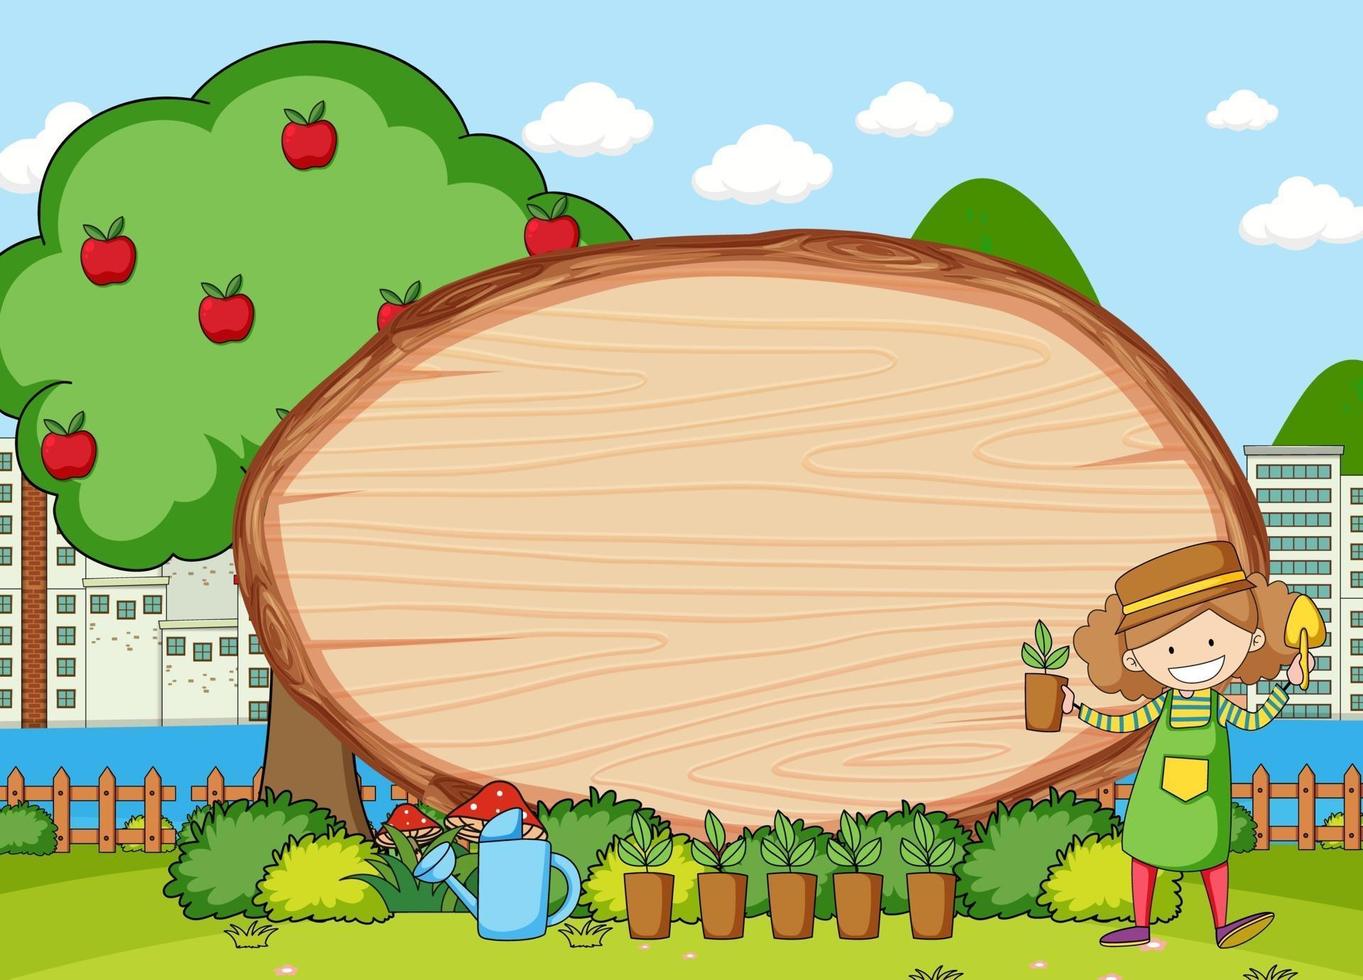 tuinscène met lege houten plank in ovale vorm met het stripfiguur van de tuinman doodle vector